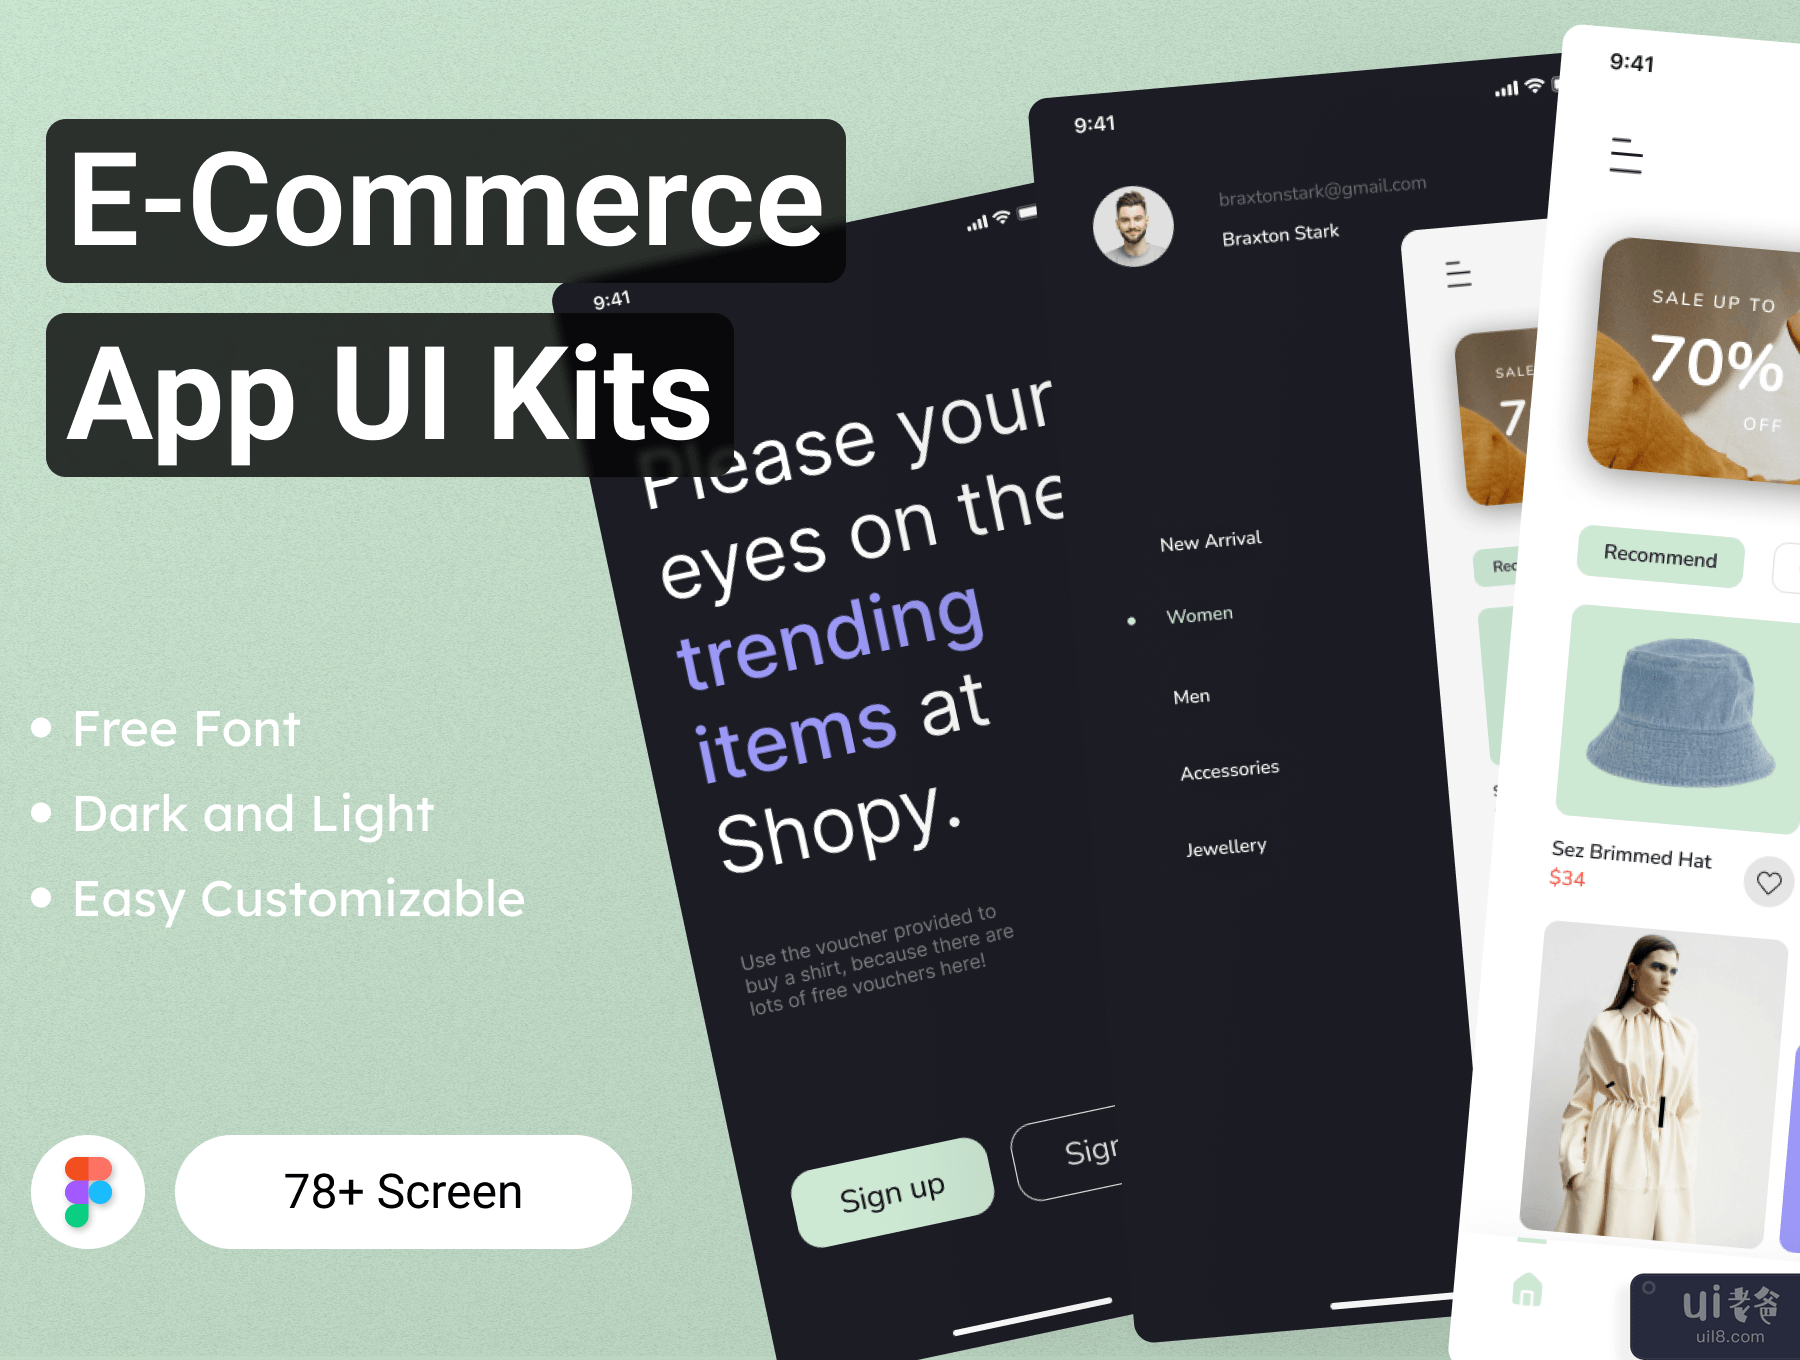 电子商务应用程序 UI 工具包 (E-commerce App UI Kit)插图5